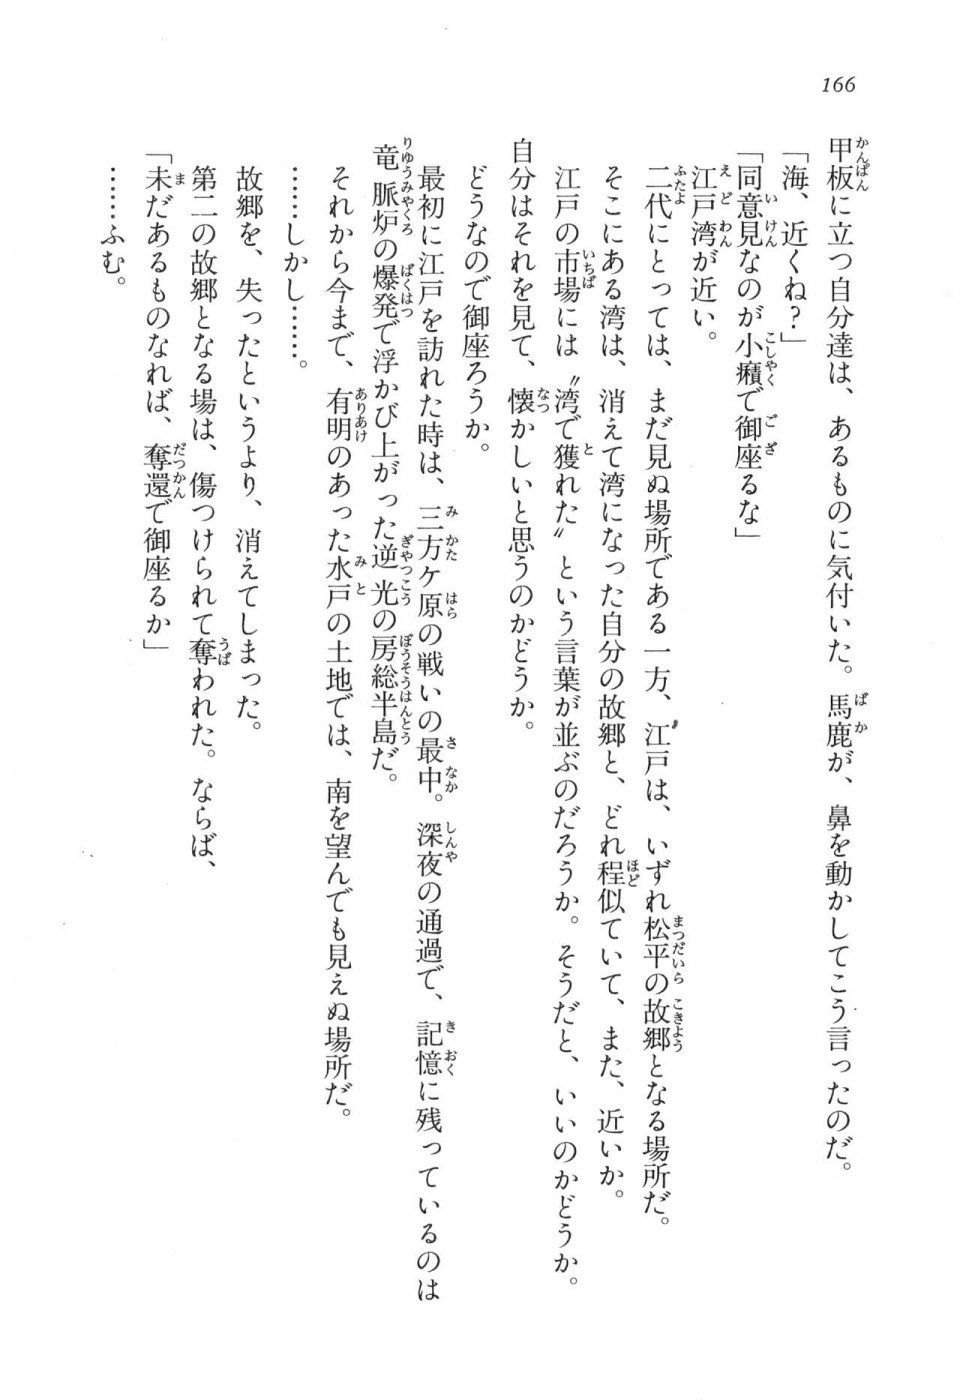 Kyoukai Senjou no Horizon LN Vol 17(7B) - Photo #166